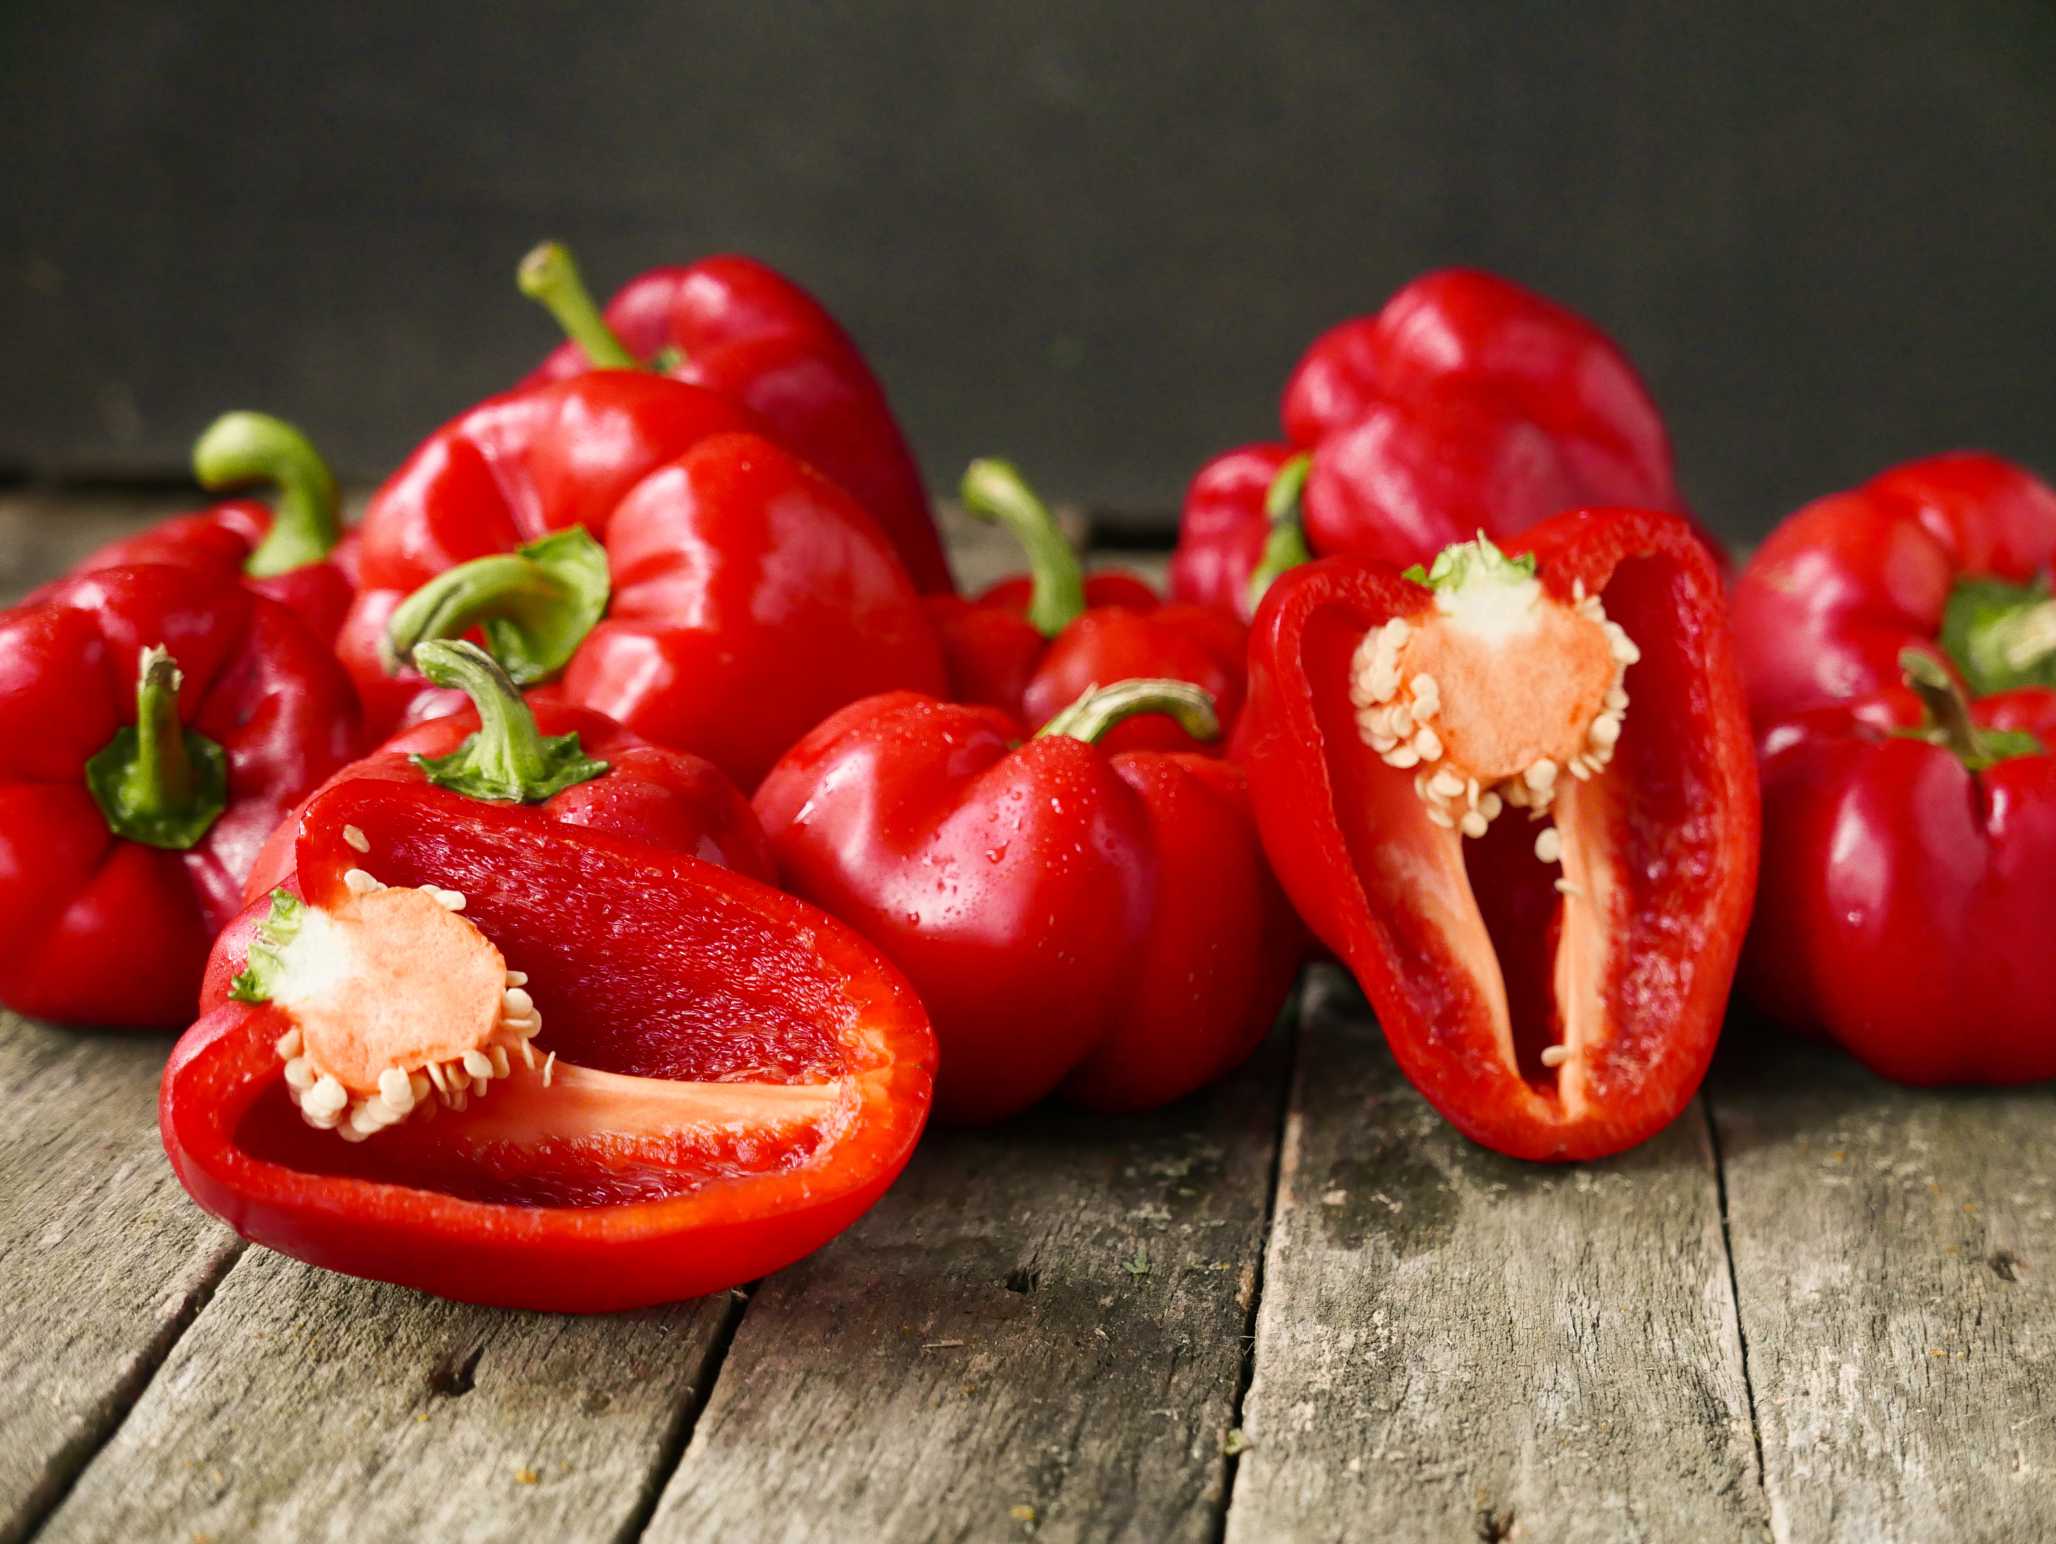 microsoft, ist paprika gut für diabetes? eine bewertung durch ernährungsexperten